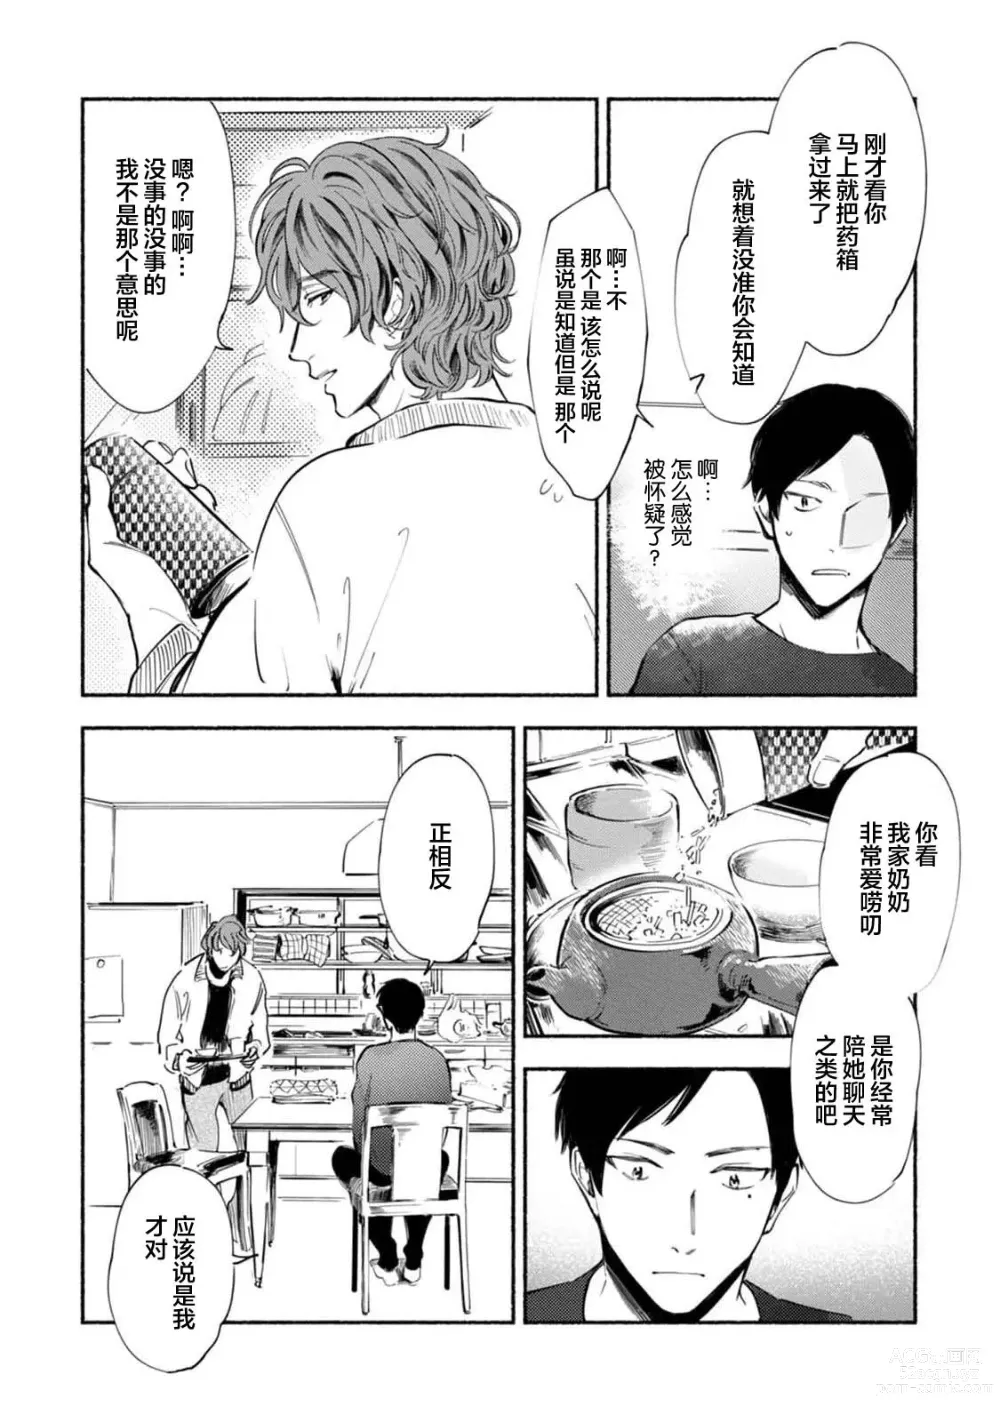 Page 26 of manga 与春为邻